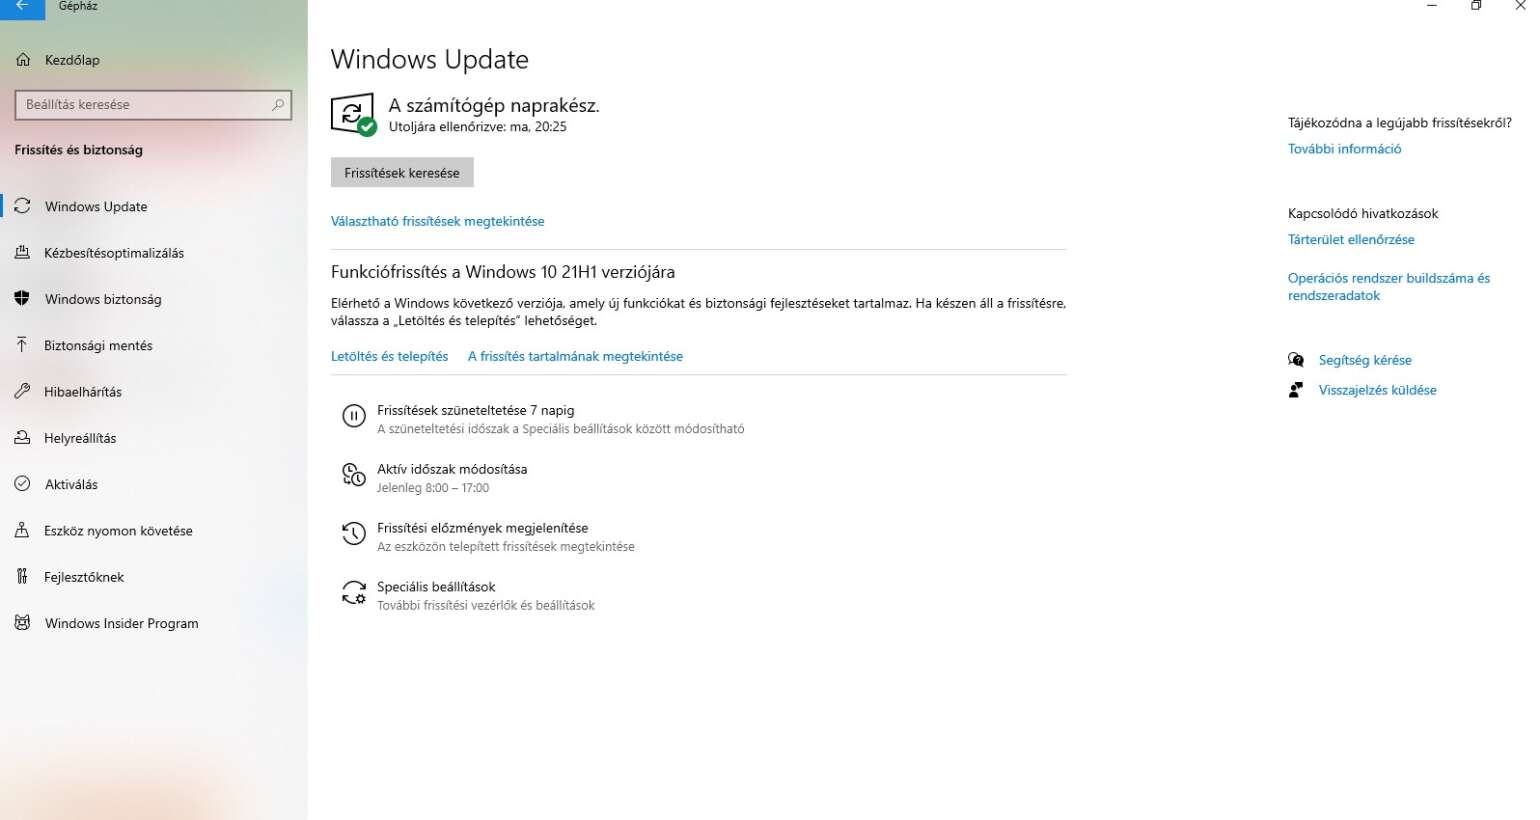 Már letölthető a Windows 10 21H1 funkciófrissítése